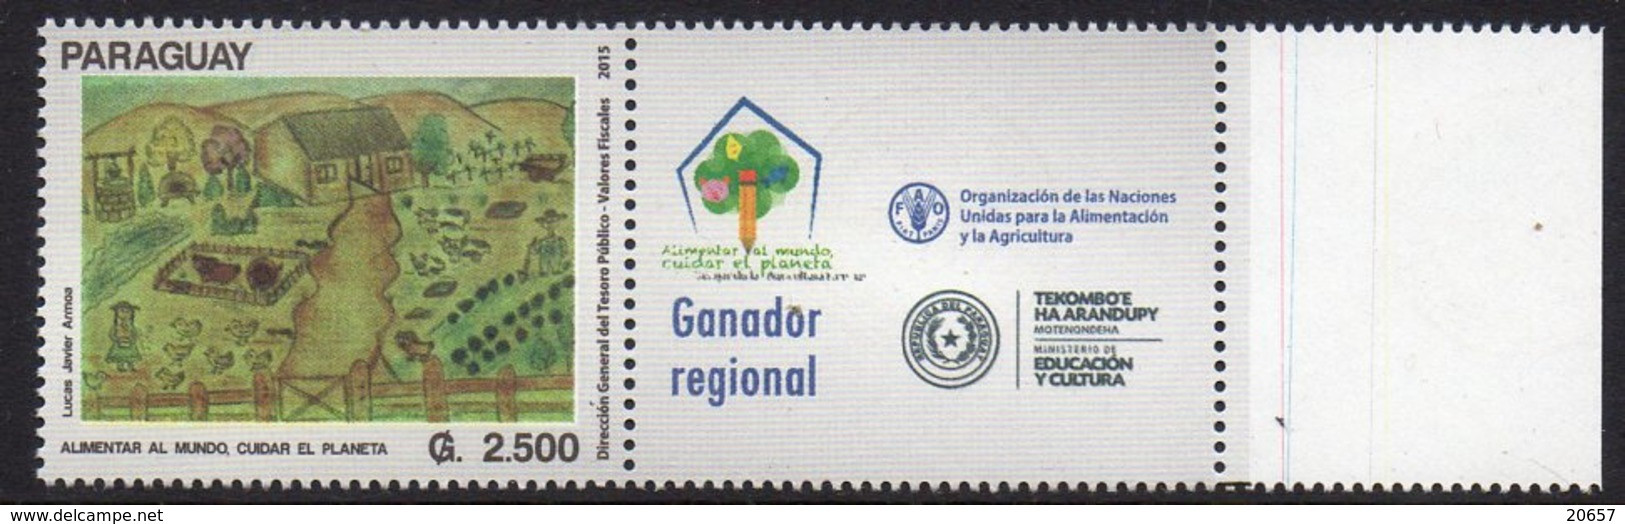 Paraguay 3203 FAO ONU Alimentation - ACF - Aktion Gegen Den Hunger